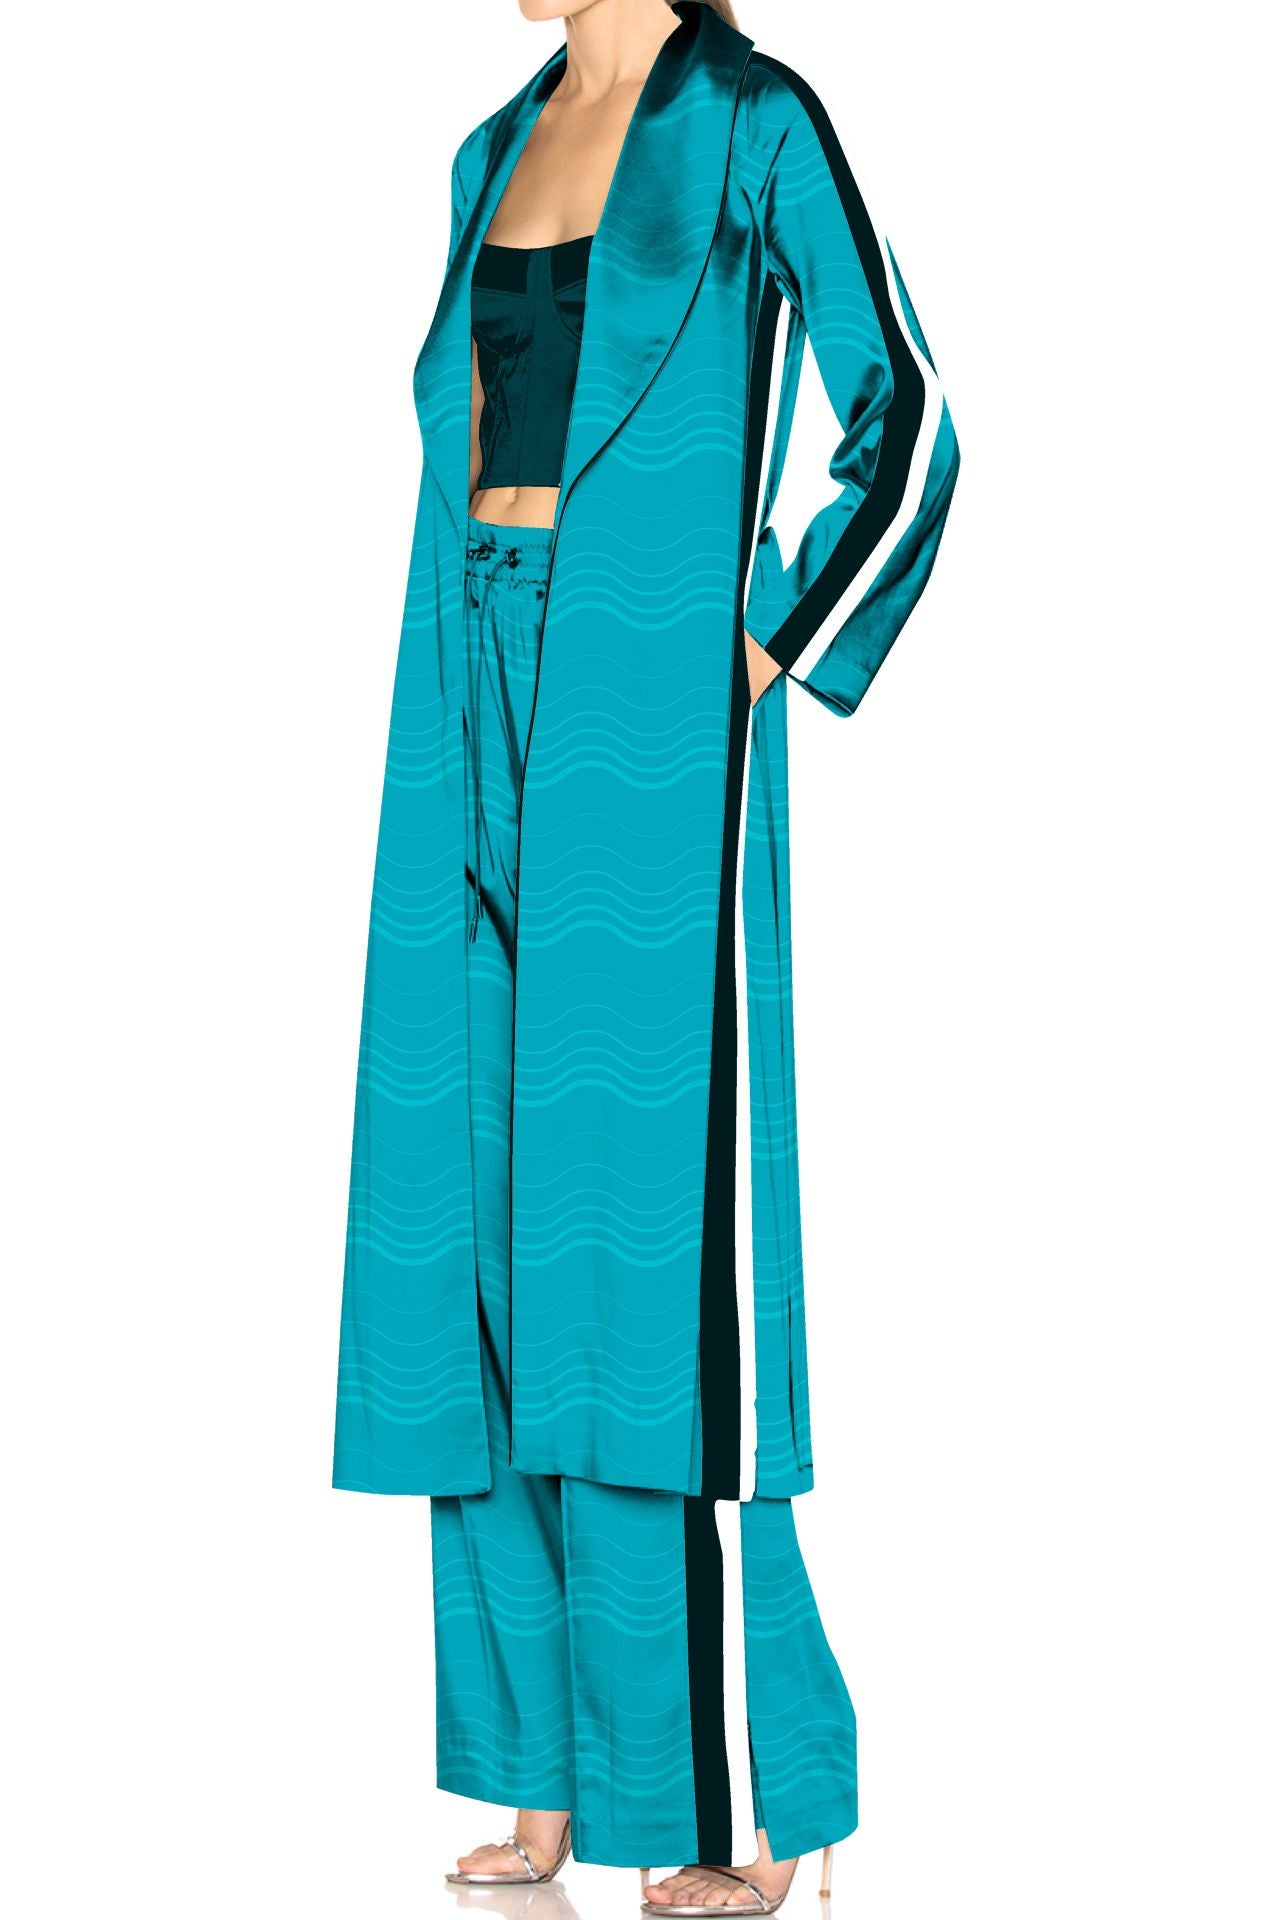 "Kyle X Shahida" "pajamas with matching robe" "womens pajamas and robe" "matching pjs and robe"